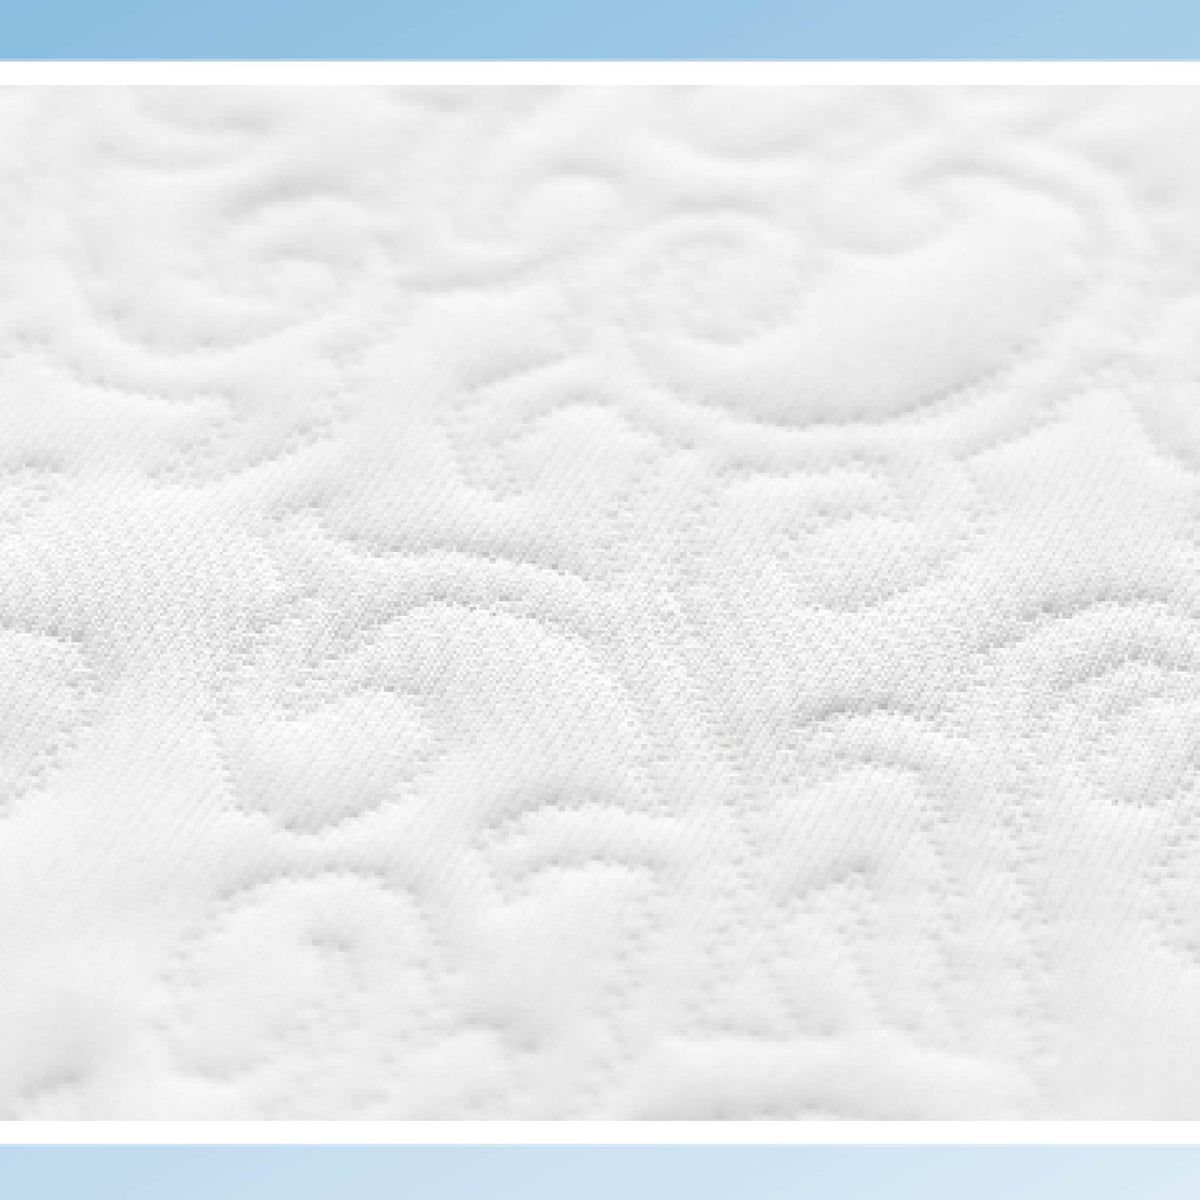 信封式枕頭透氣防水保潔套/枕頭客製化尺寸/專利科技材質物理性防蟎抗菌